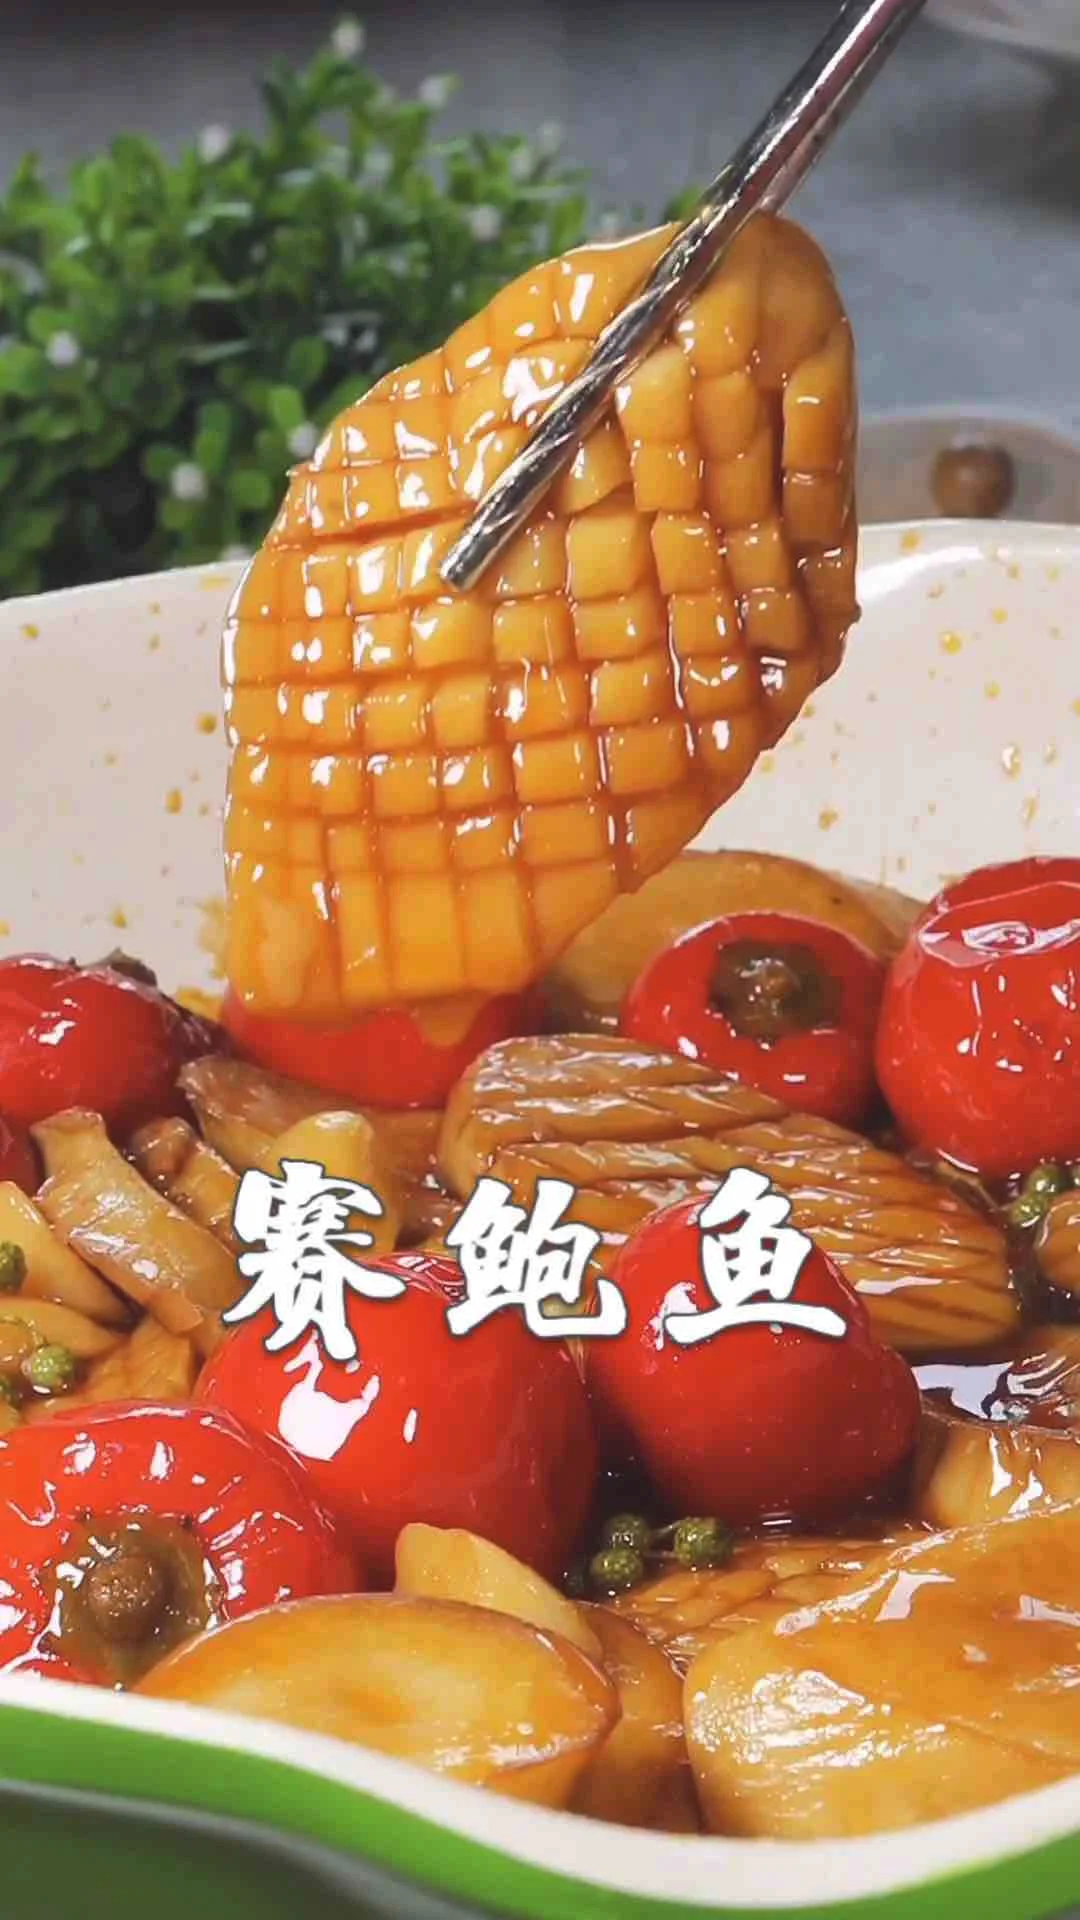 赛鲍鱼的做法-香辣味炒菜谱